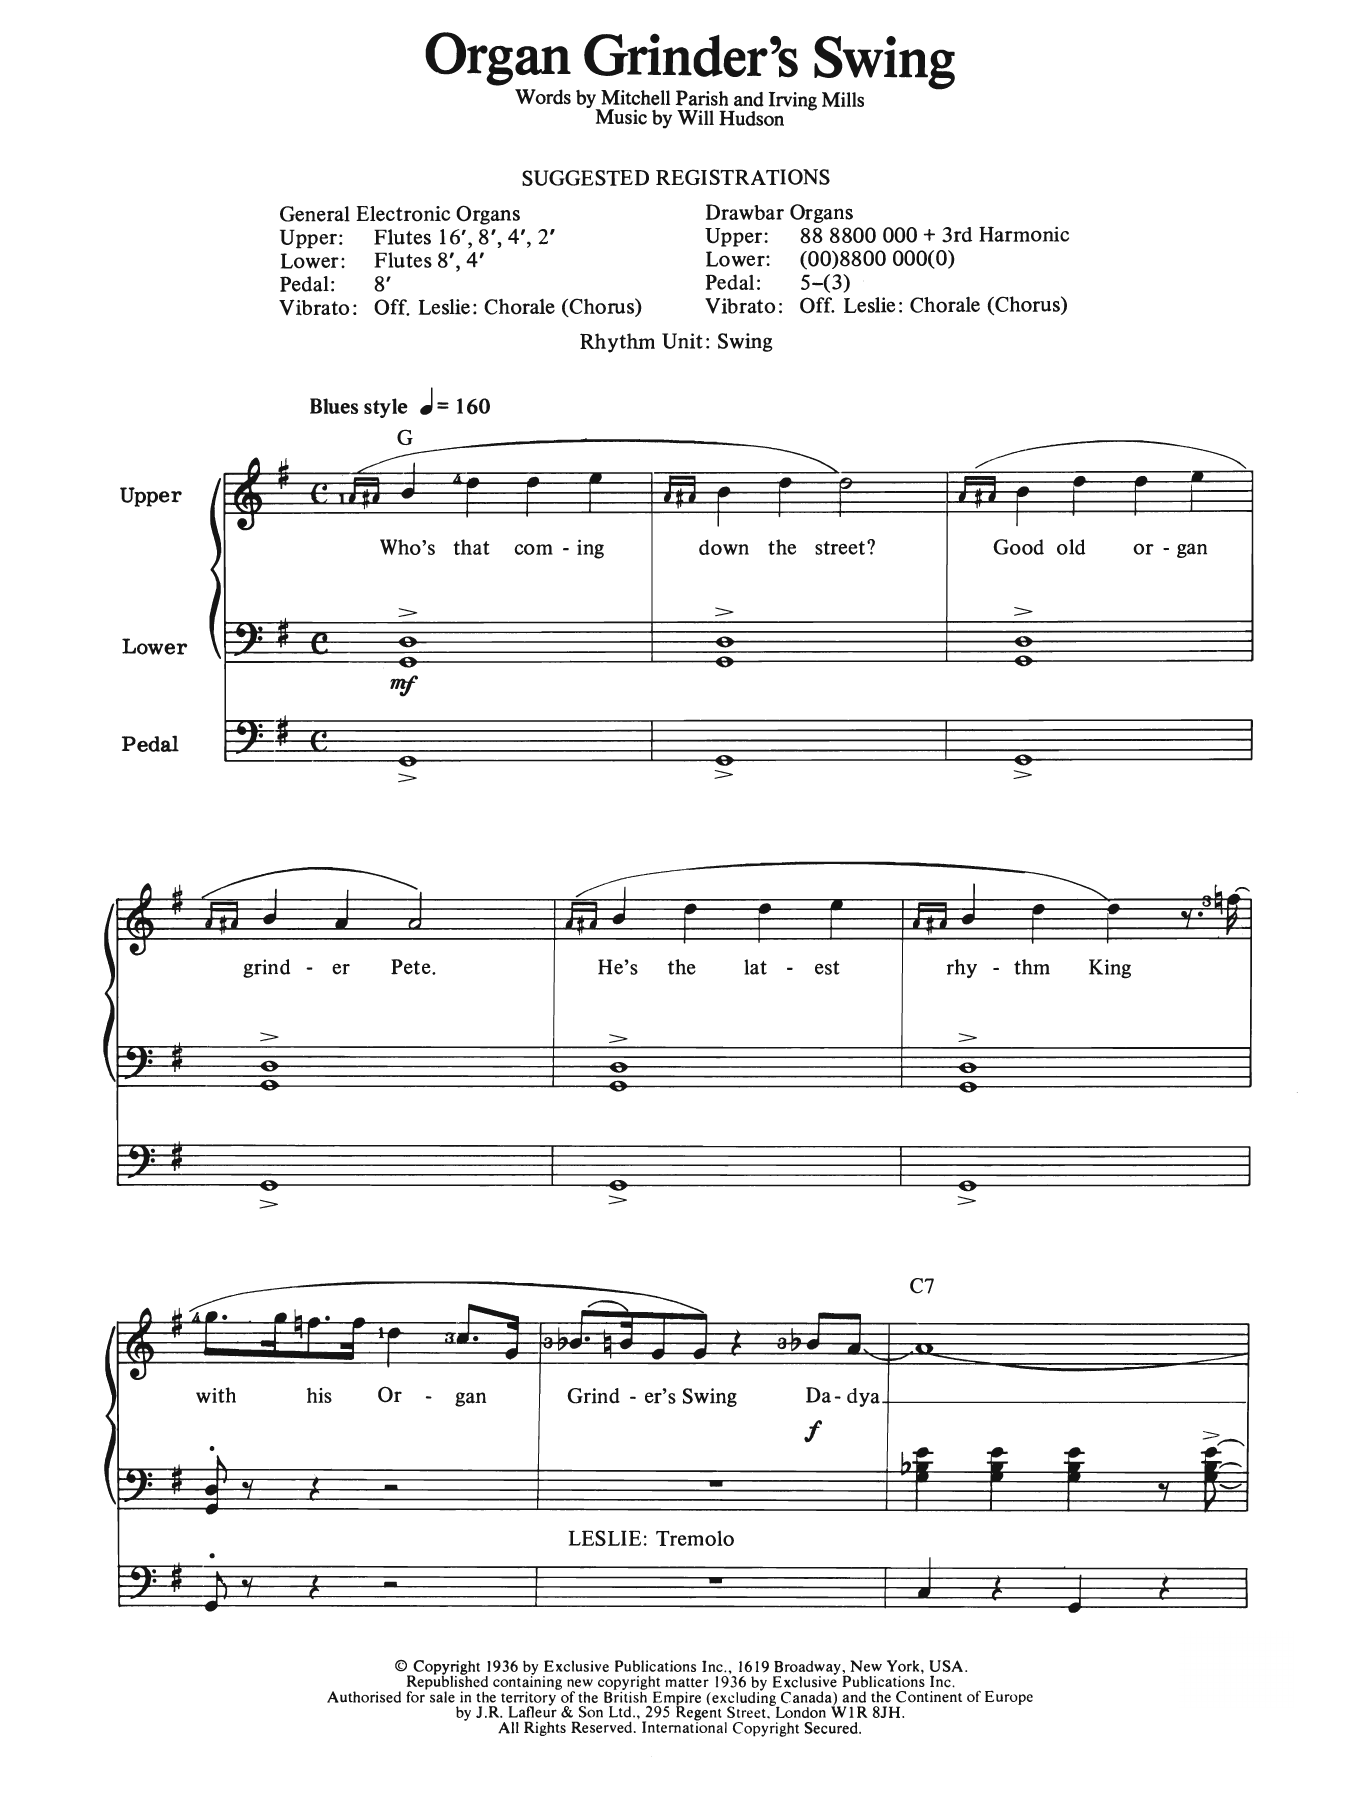 Download Will Hudson Organ Grinder's Swing Sheet Music